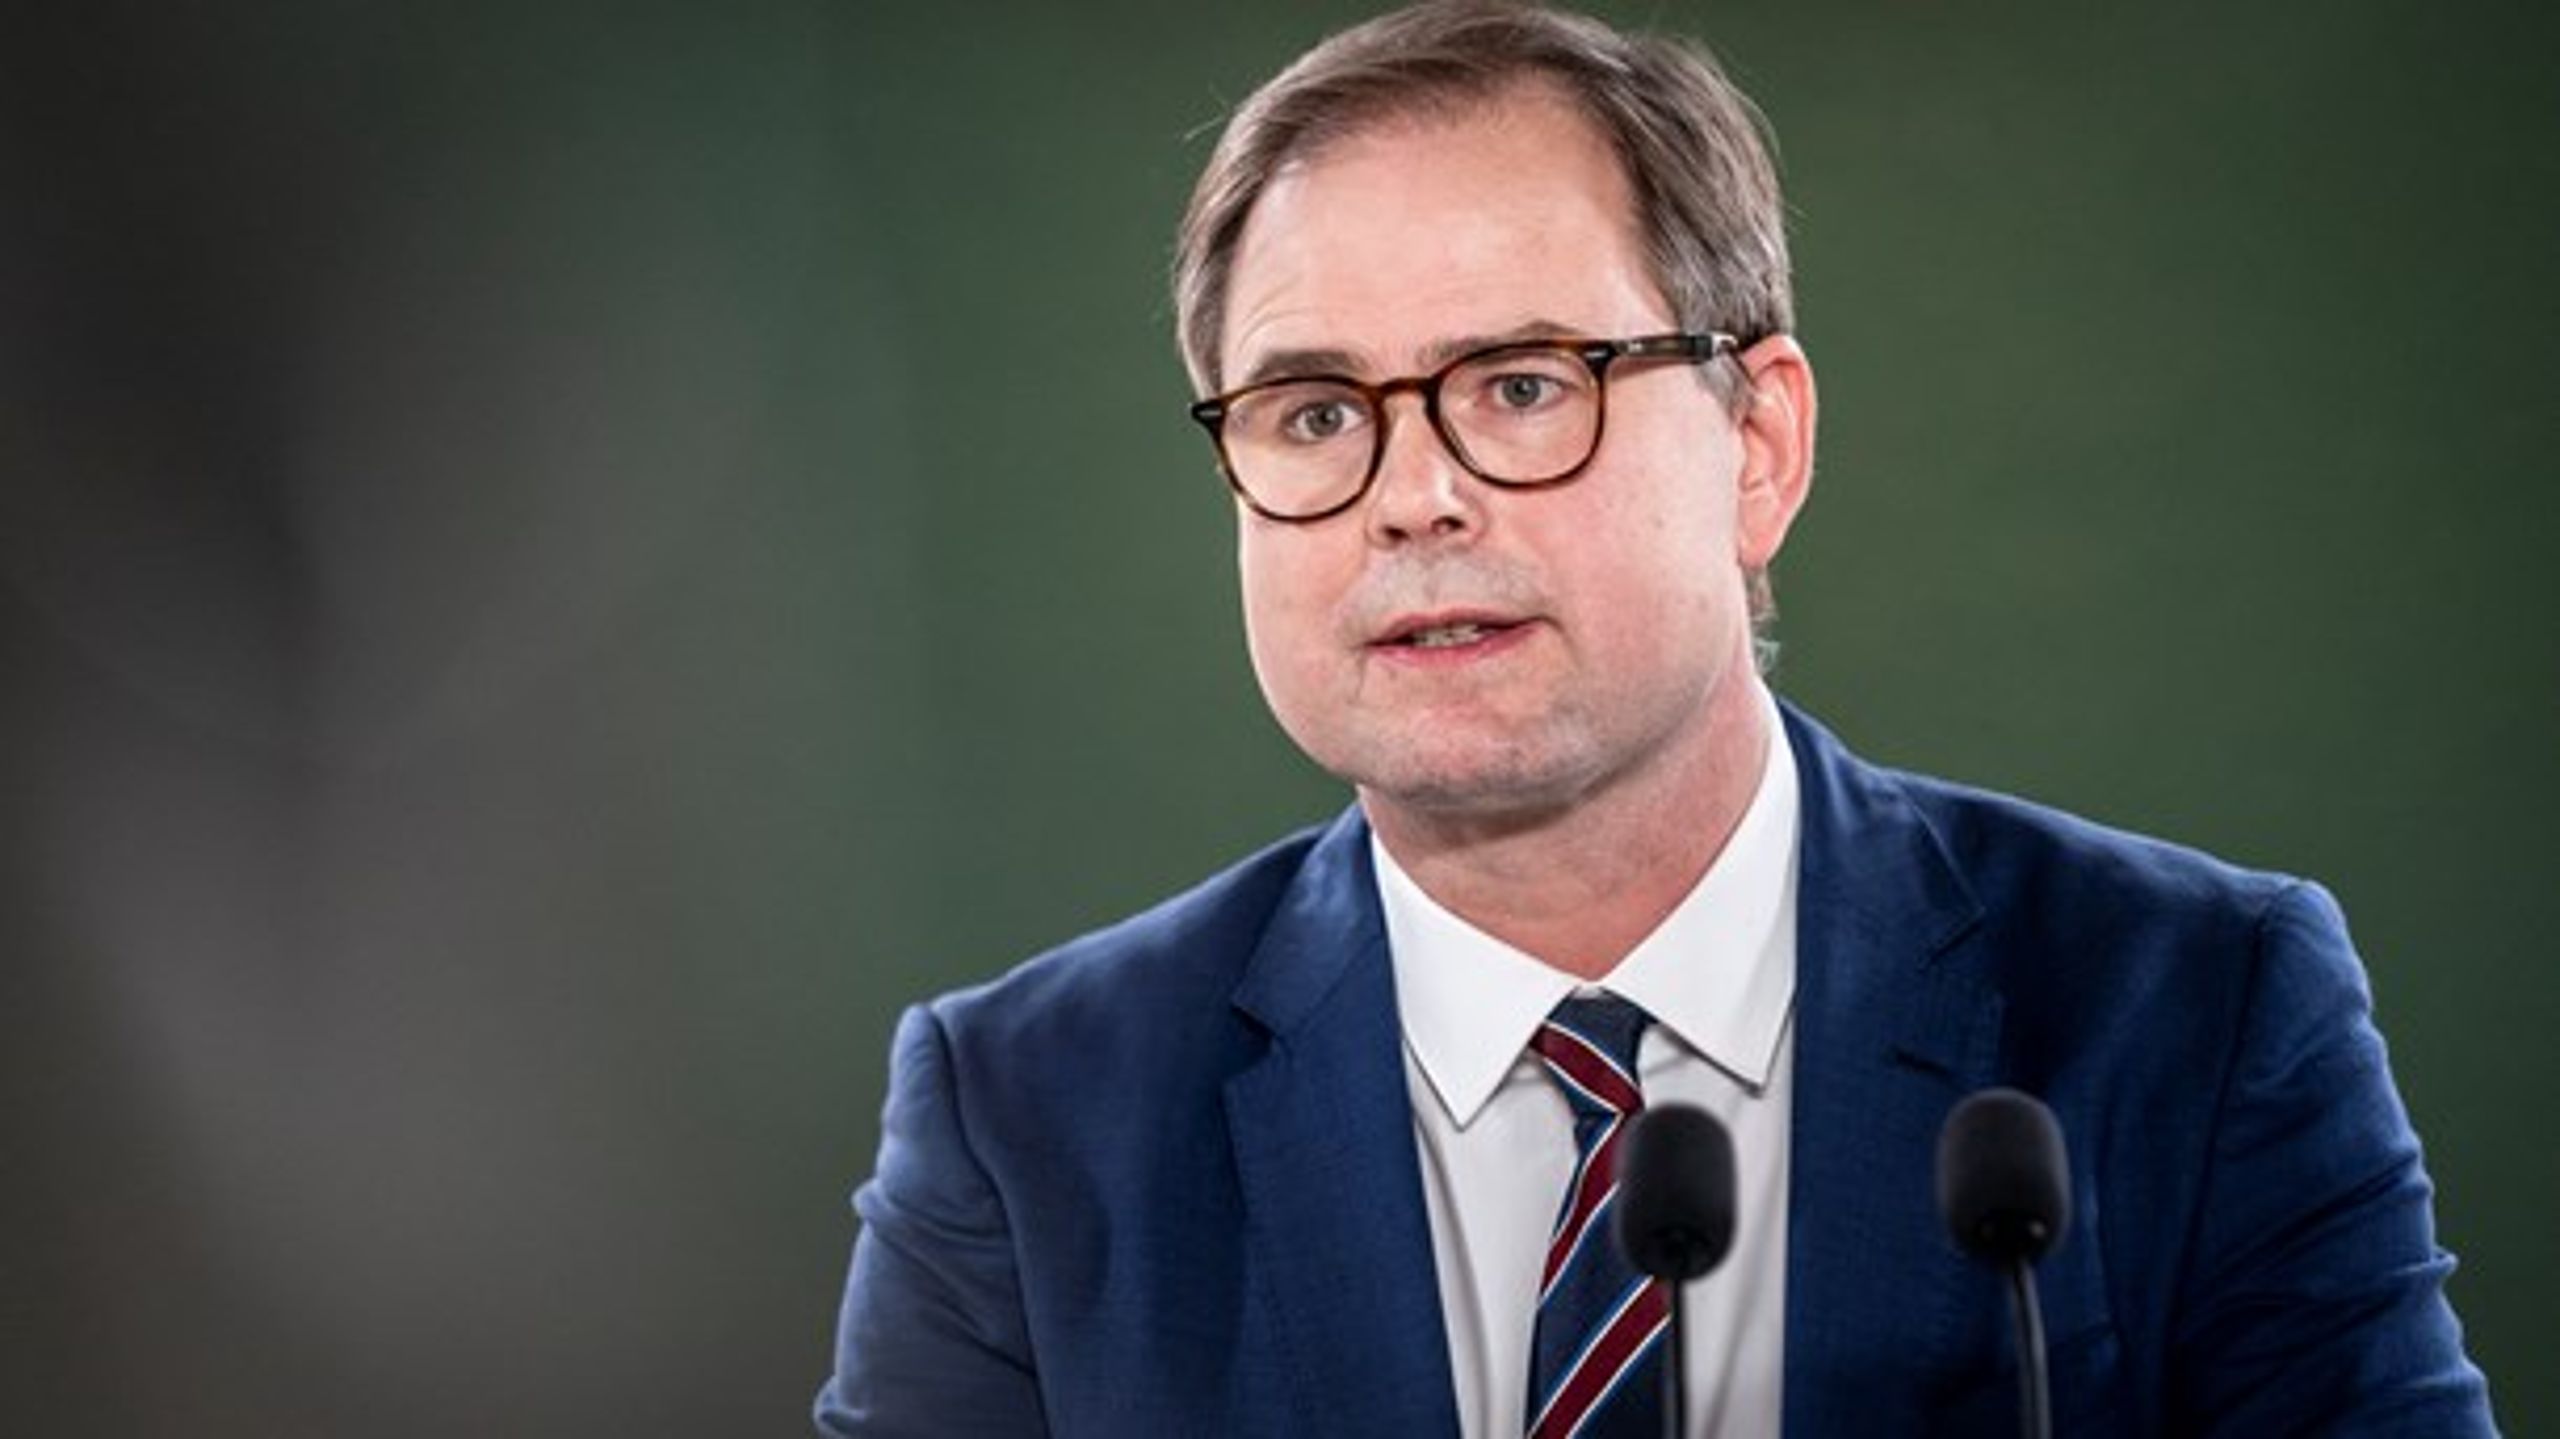 Nicolai Wammen (S) skal stå fast i forhandlingerne med regioner og kommuner, mener DI.